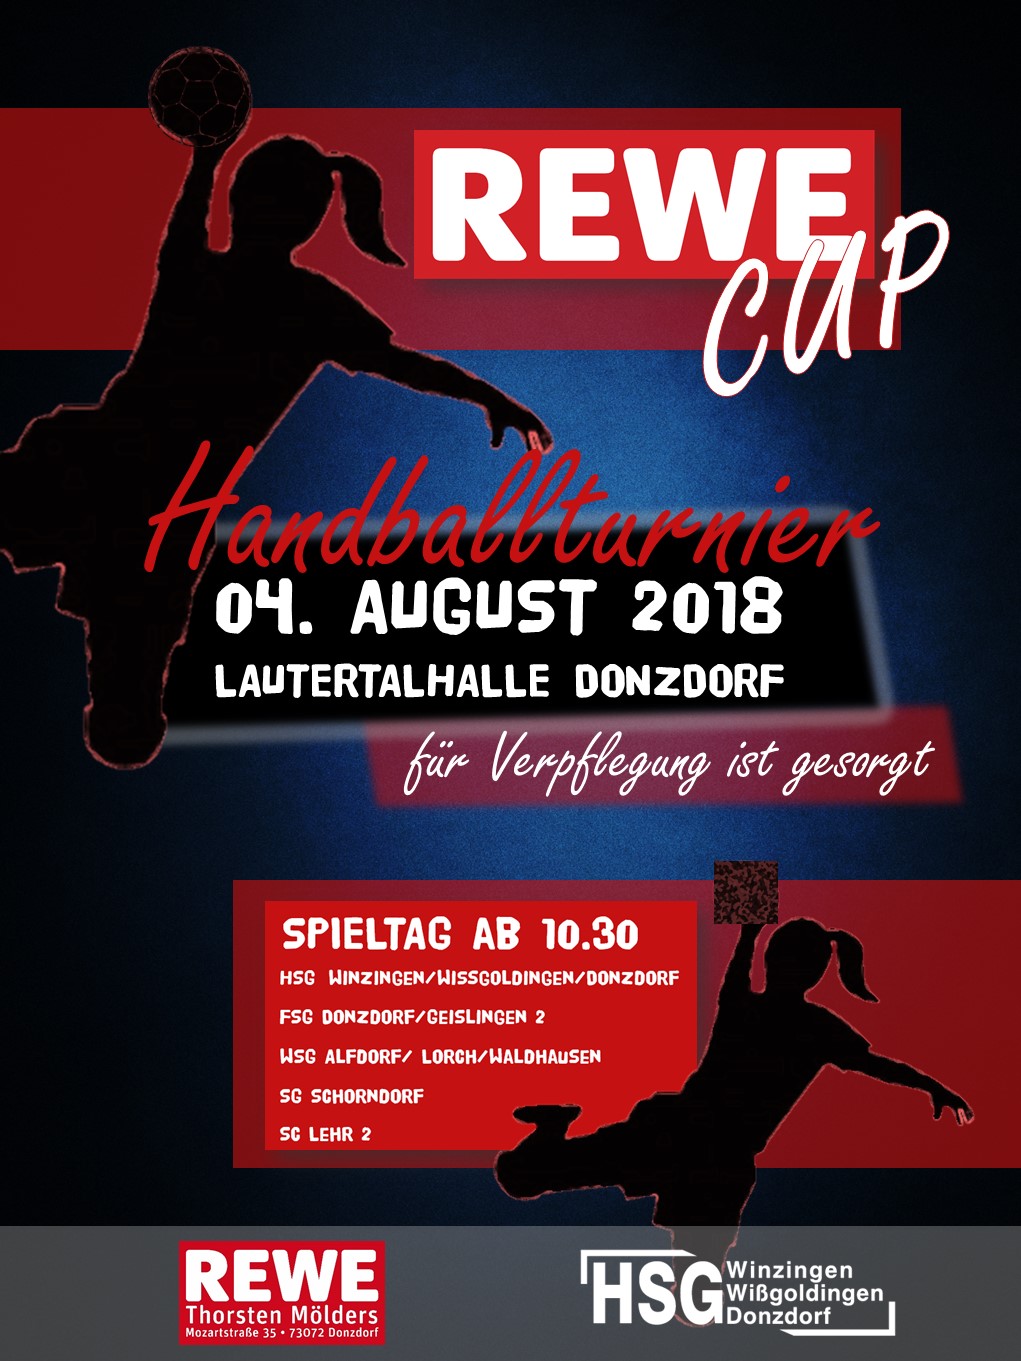 REWE Cup 2018